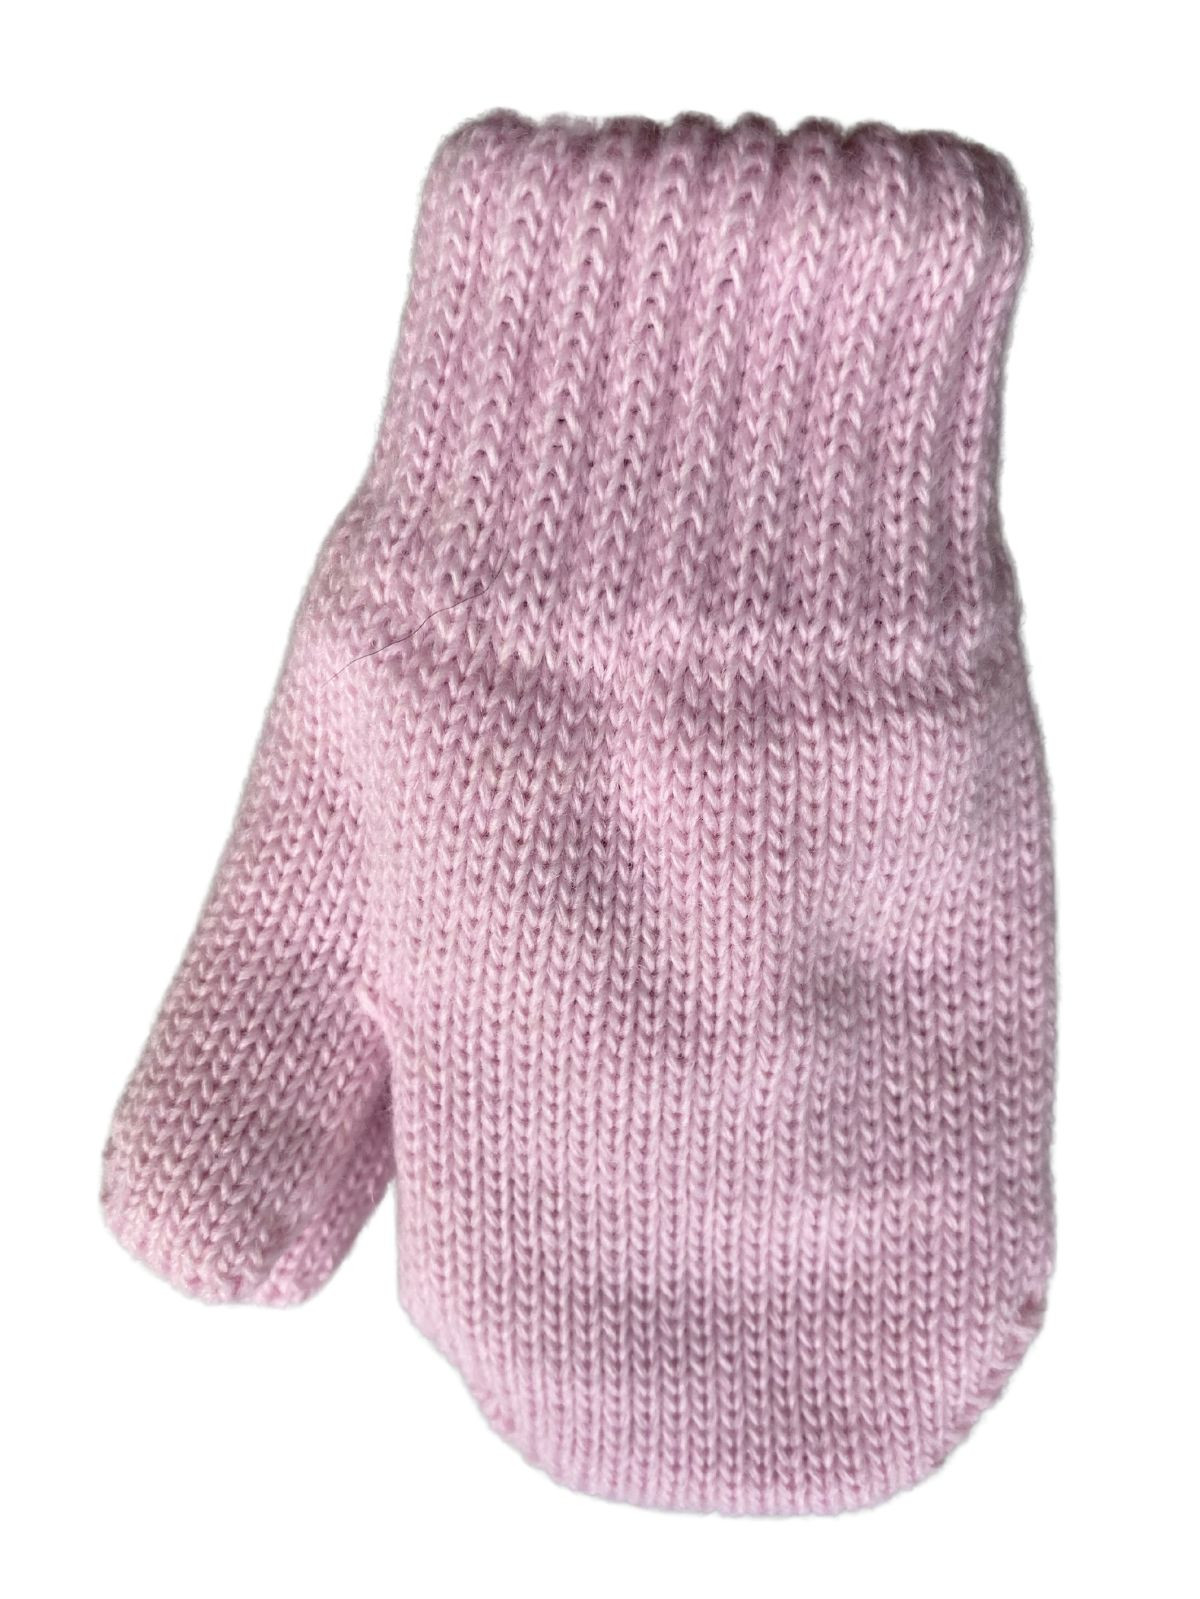 Mitaines tricotés pour enfant 0-24 mois, Mono_rose